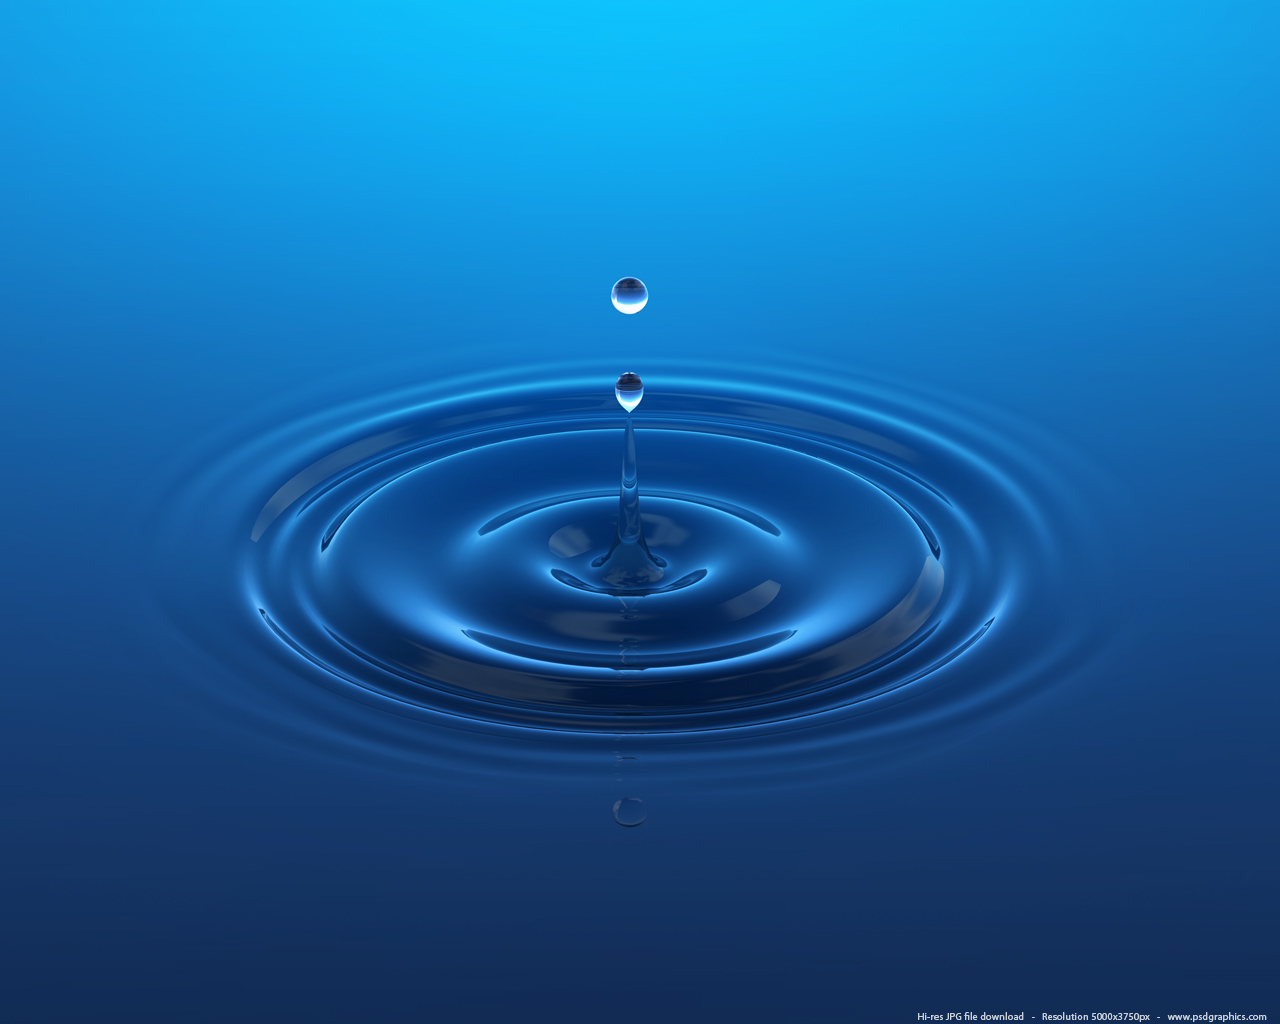 Blue Water Drop